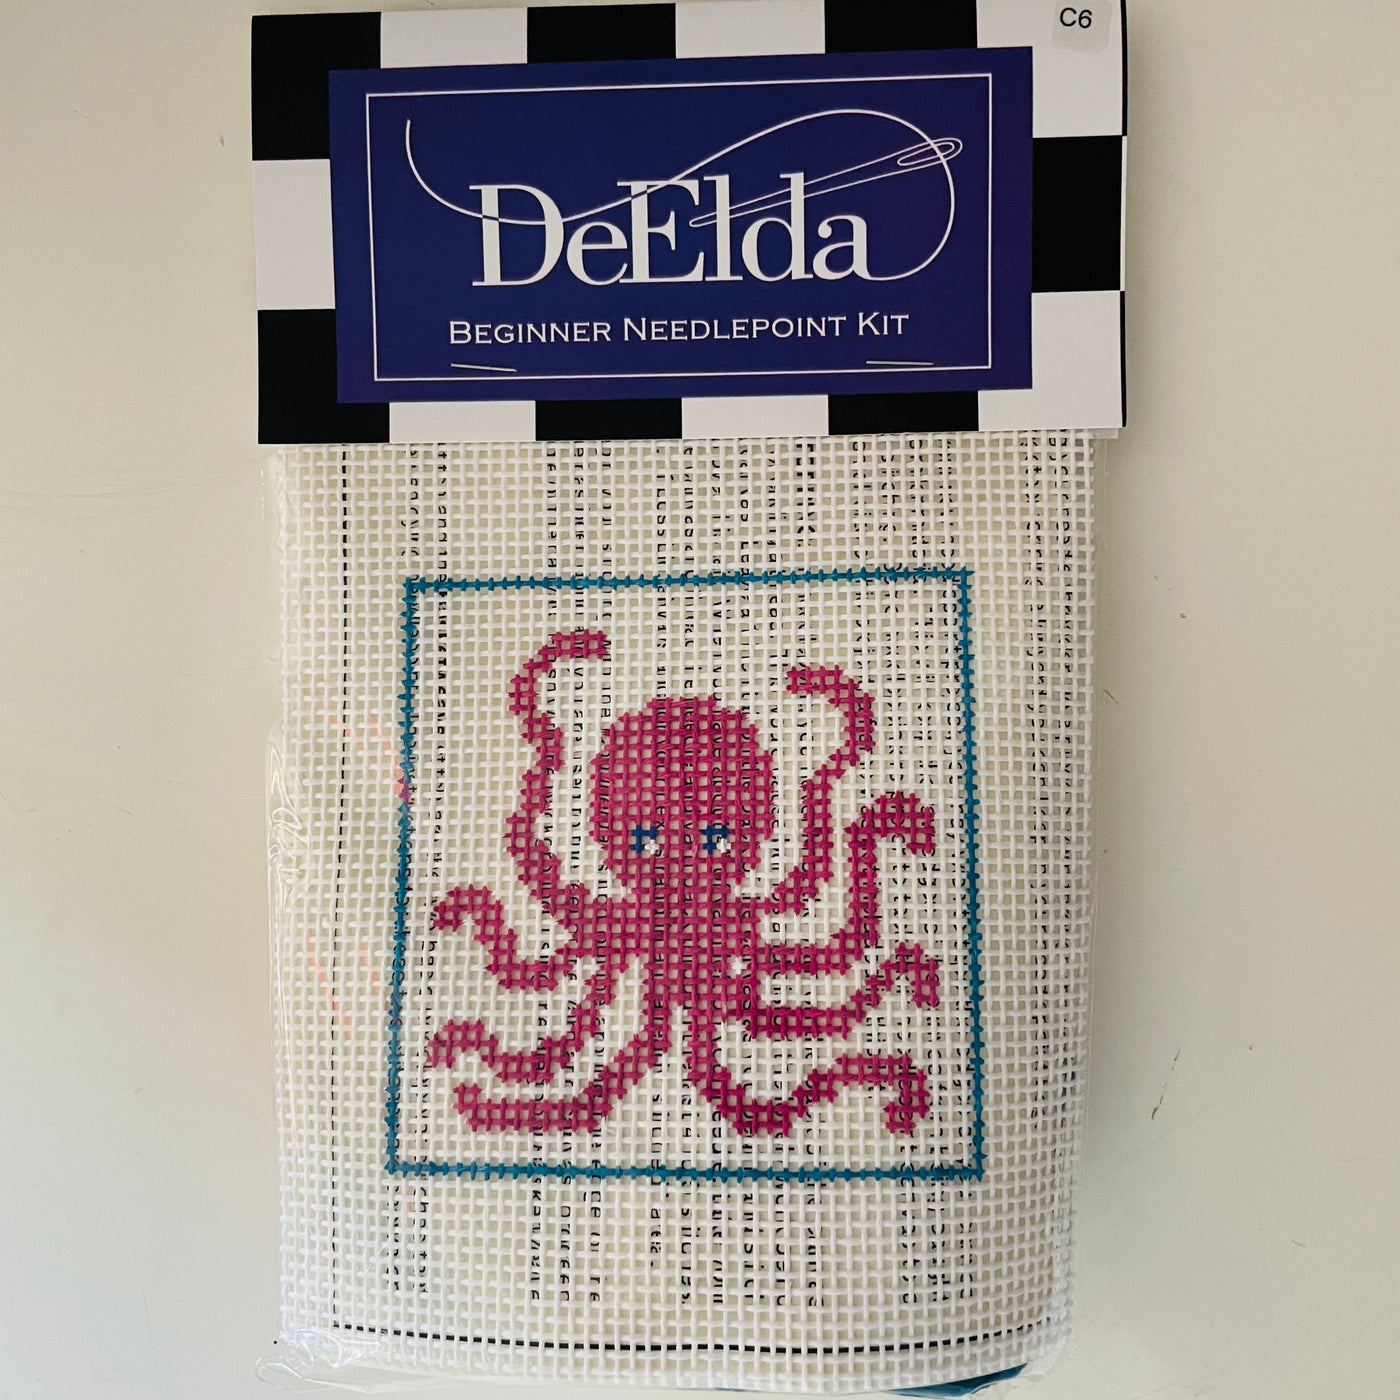 DeElda Octopus Kit (includes fiber)